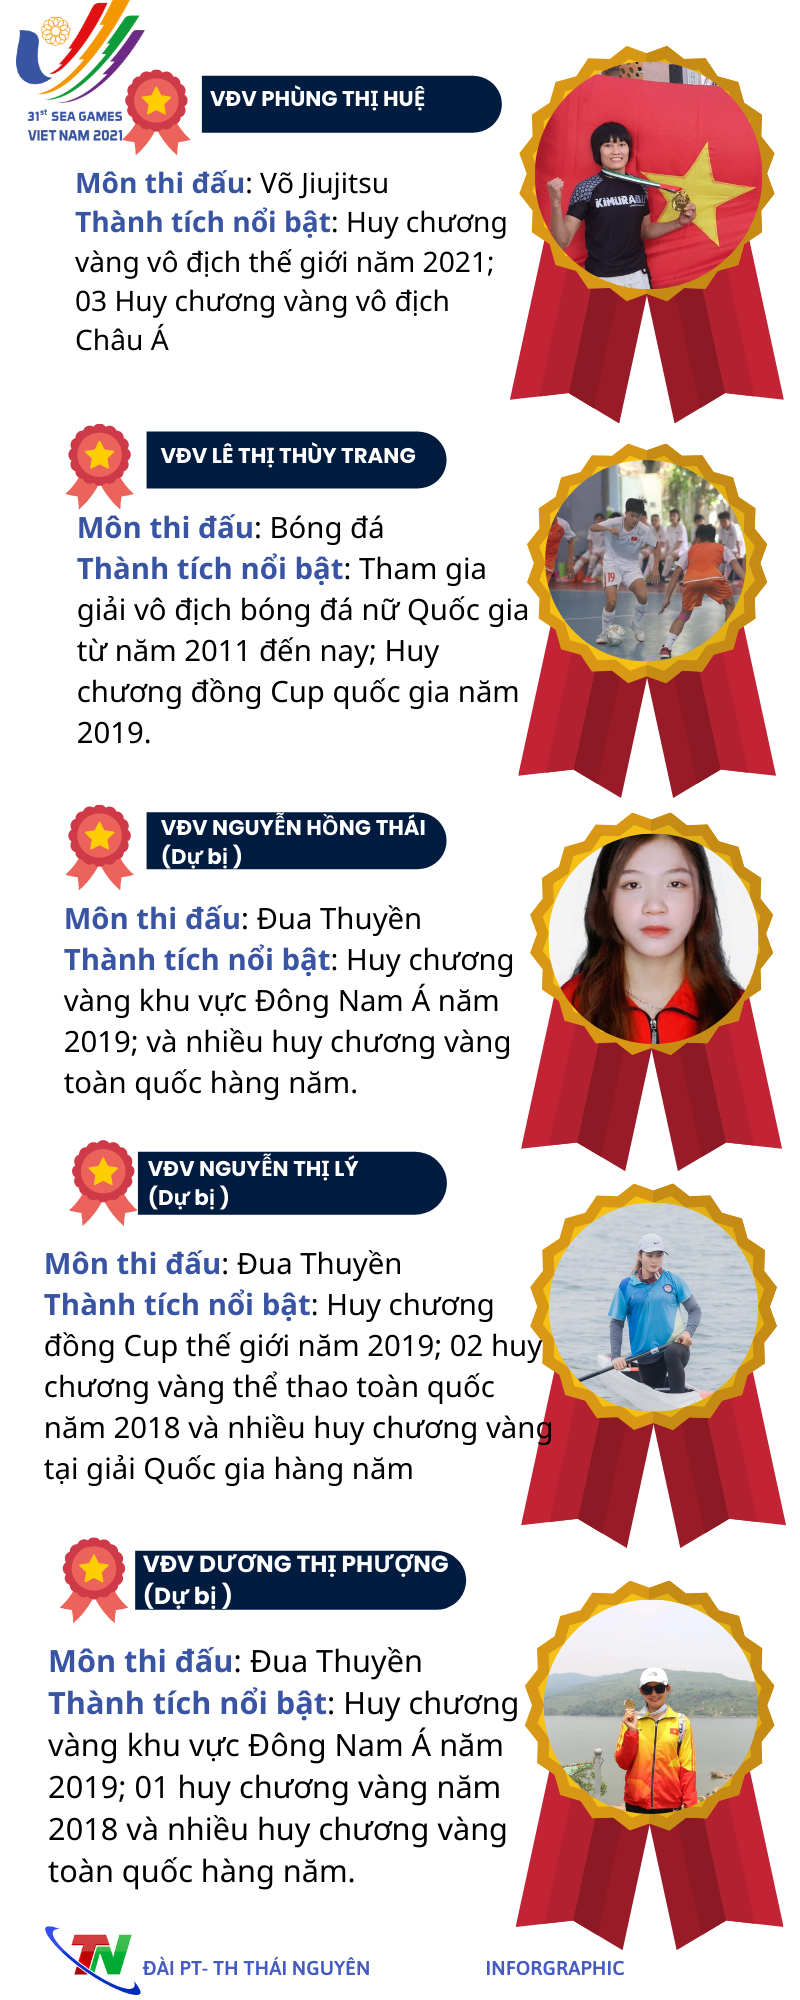 [Infographic]  Những gương mặt thể thao Thái Nguyên tham dự SEA Games 31